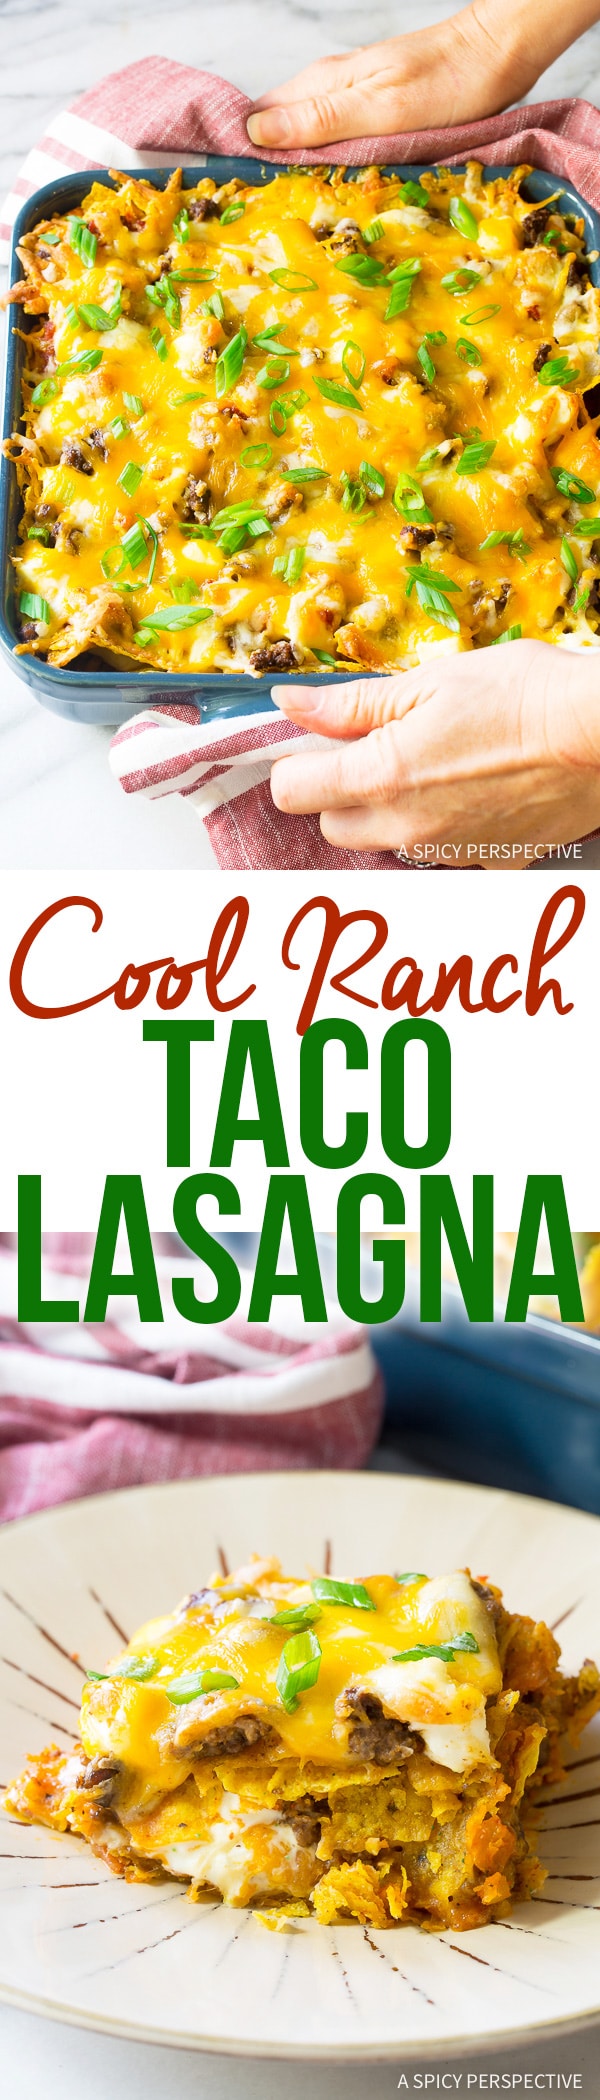 Zesty Cool Ranch Taco Lasagna Recipe - Mexican Lasagna with huge zesty flavor!